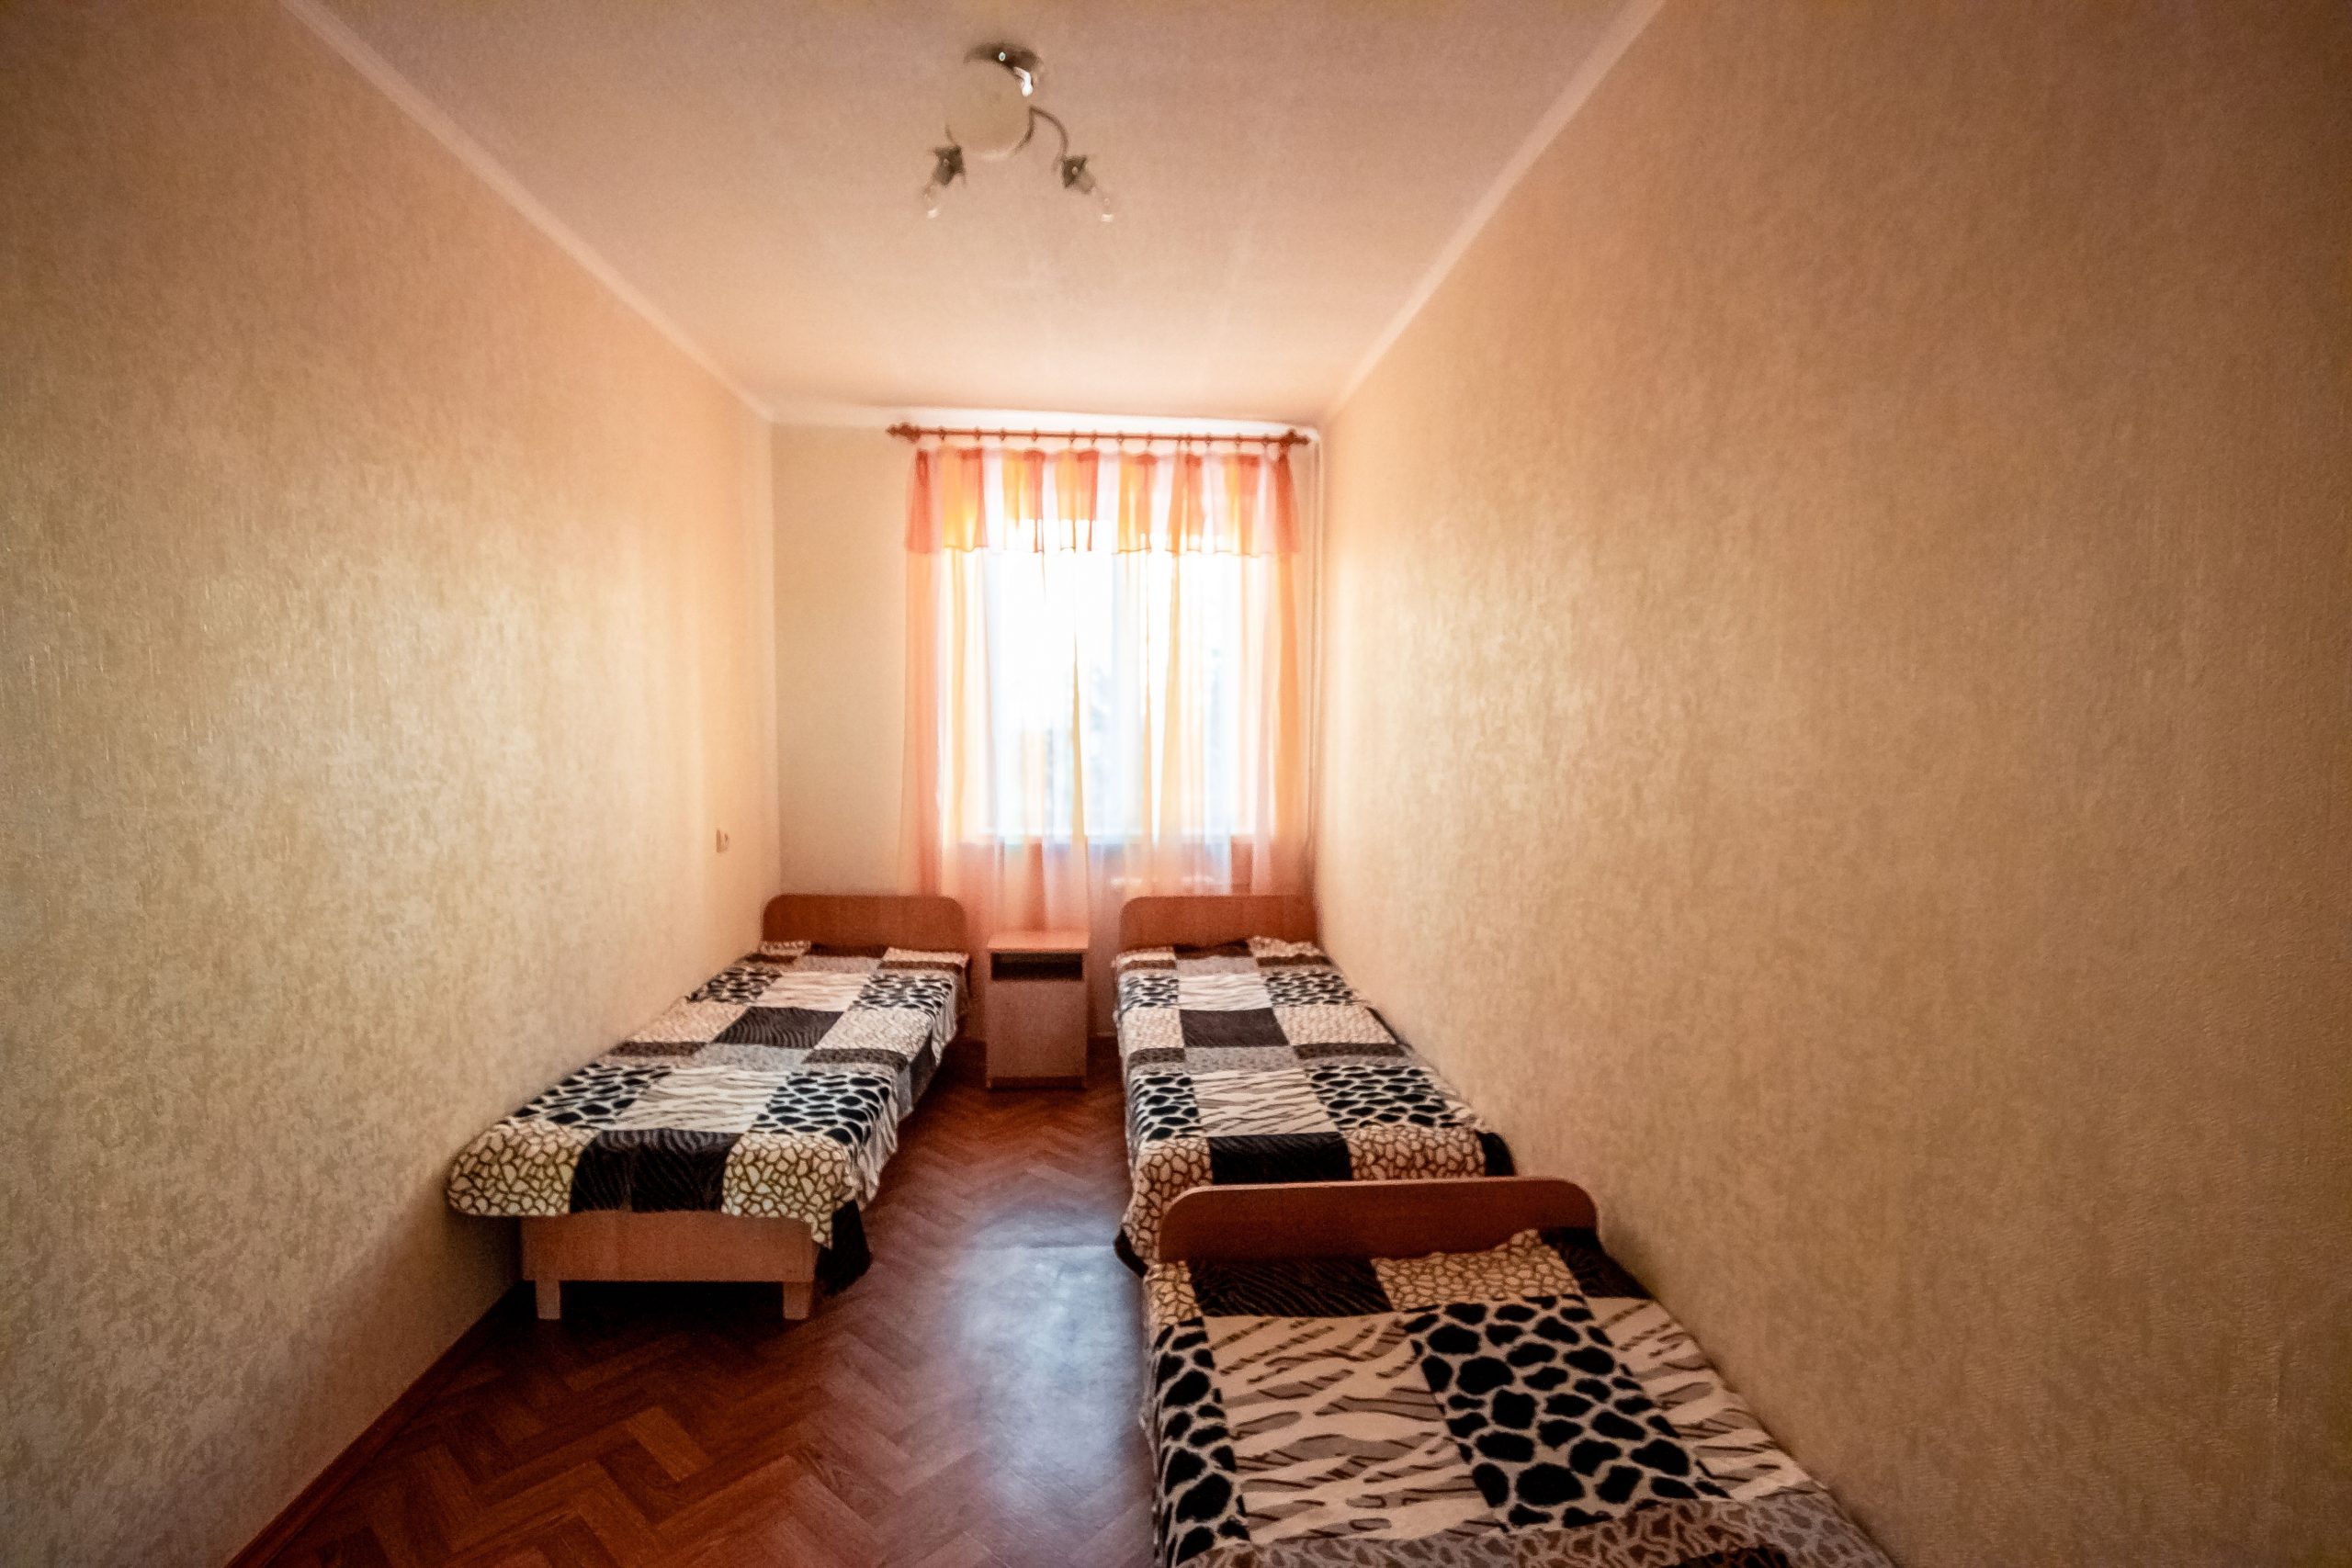 Двухкомнатная квартира на ул. Гагарина 6 (45кв.м)до 5 гостей